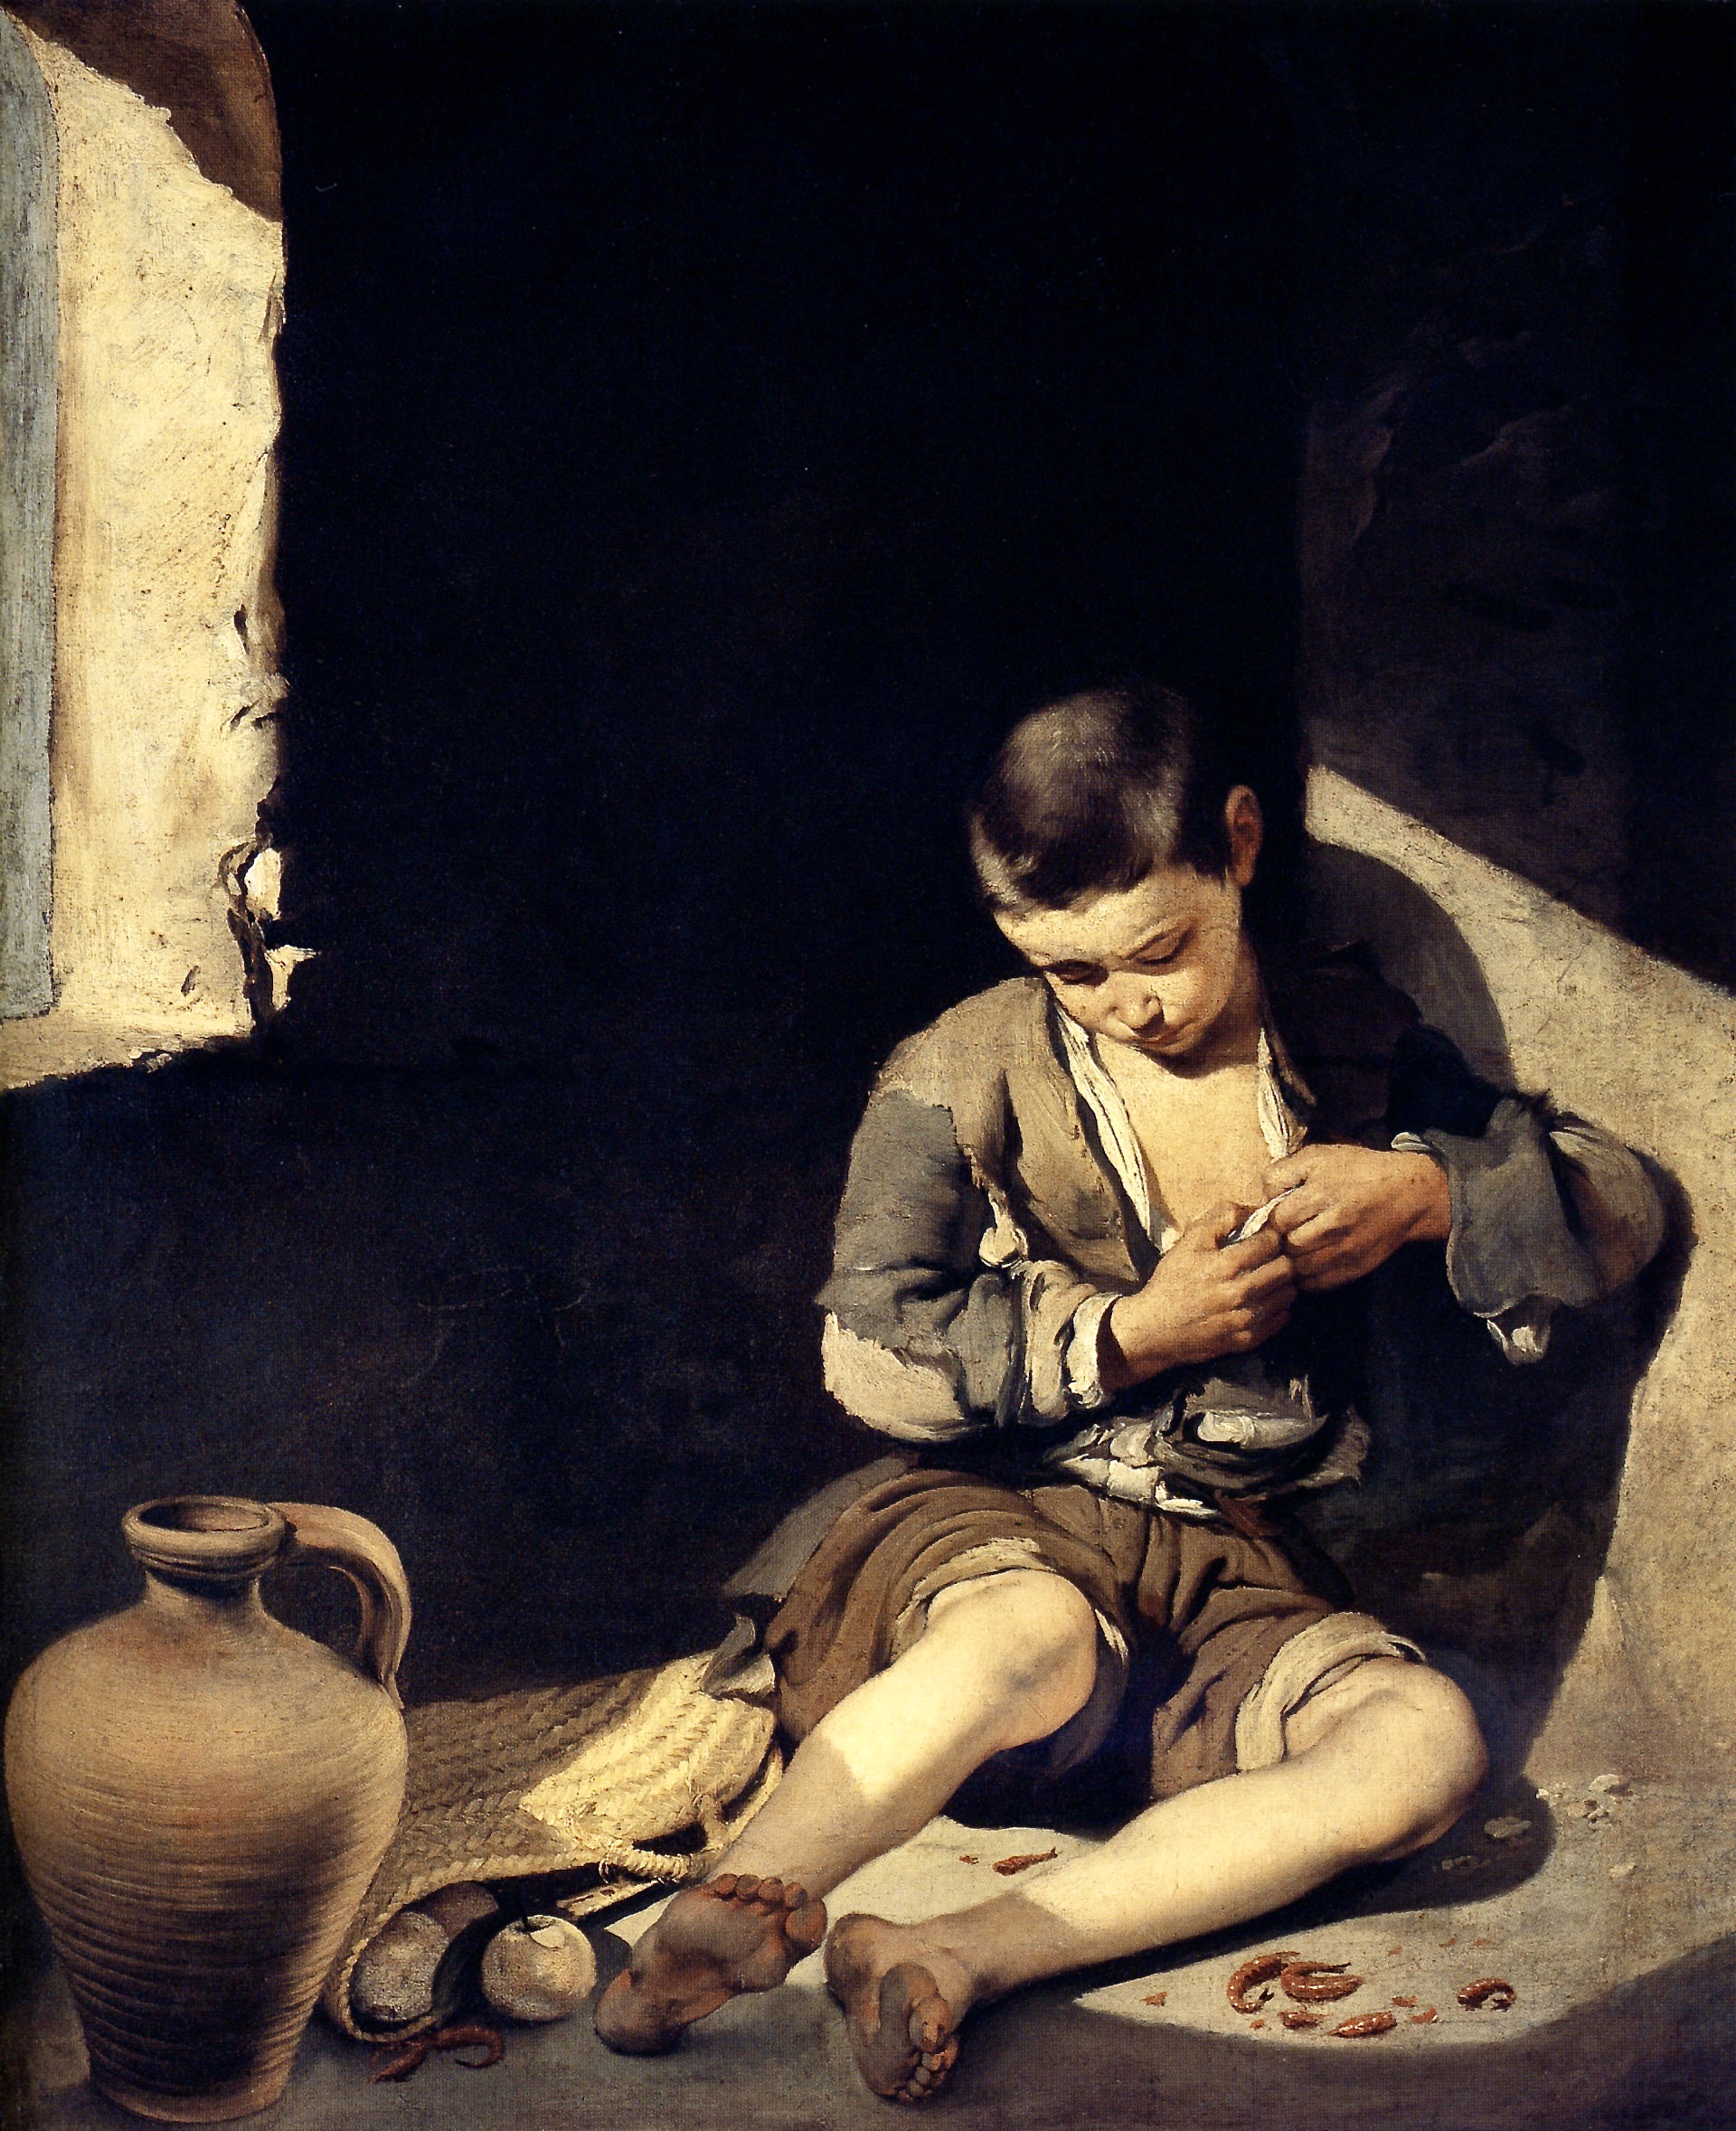 Bartolomé_Esteban_Murillo_-_The_Young_Beggar